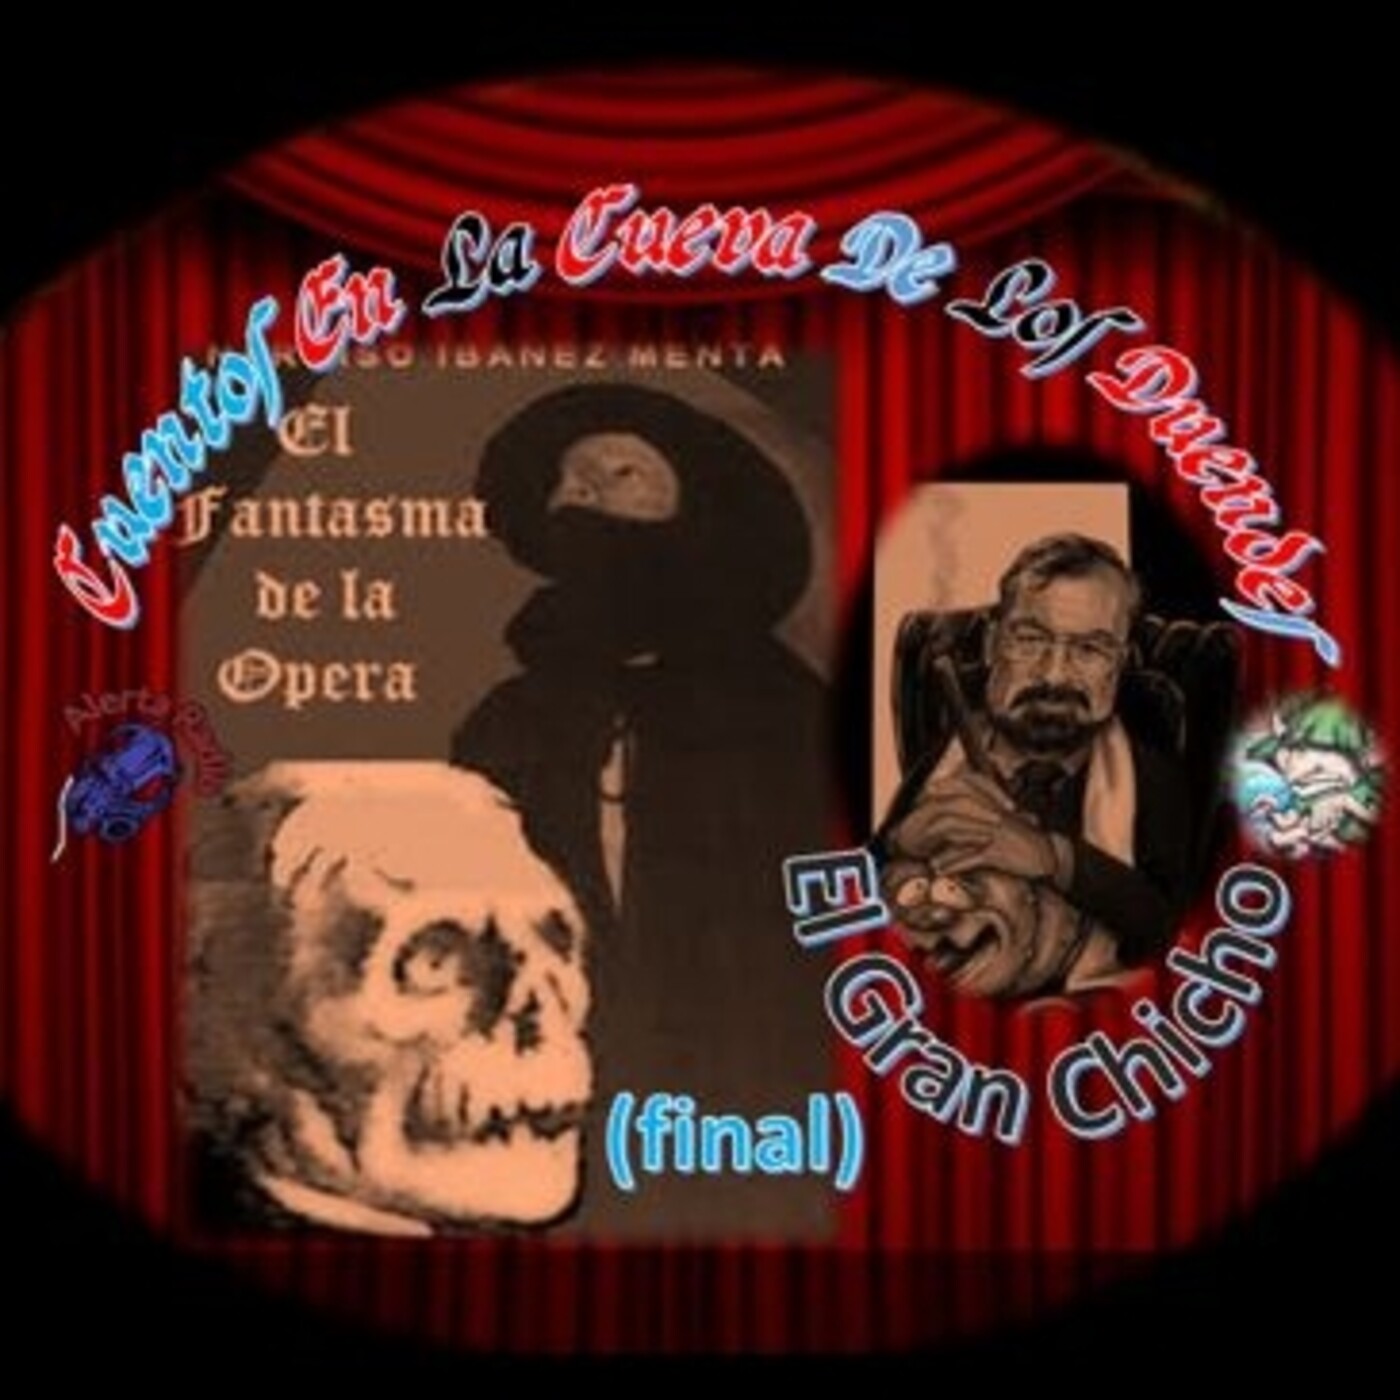 Cuentos en La Cueva 23 -T2 E15 El Gran Chicho #7 El Fantasma de la Ópera (final)